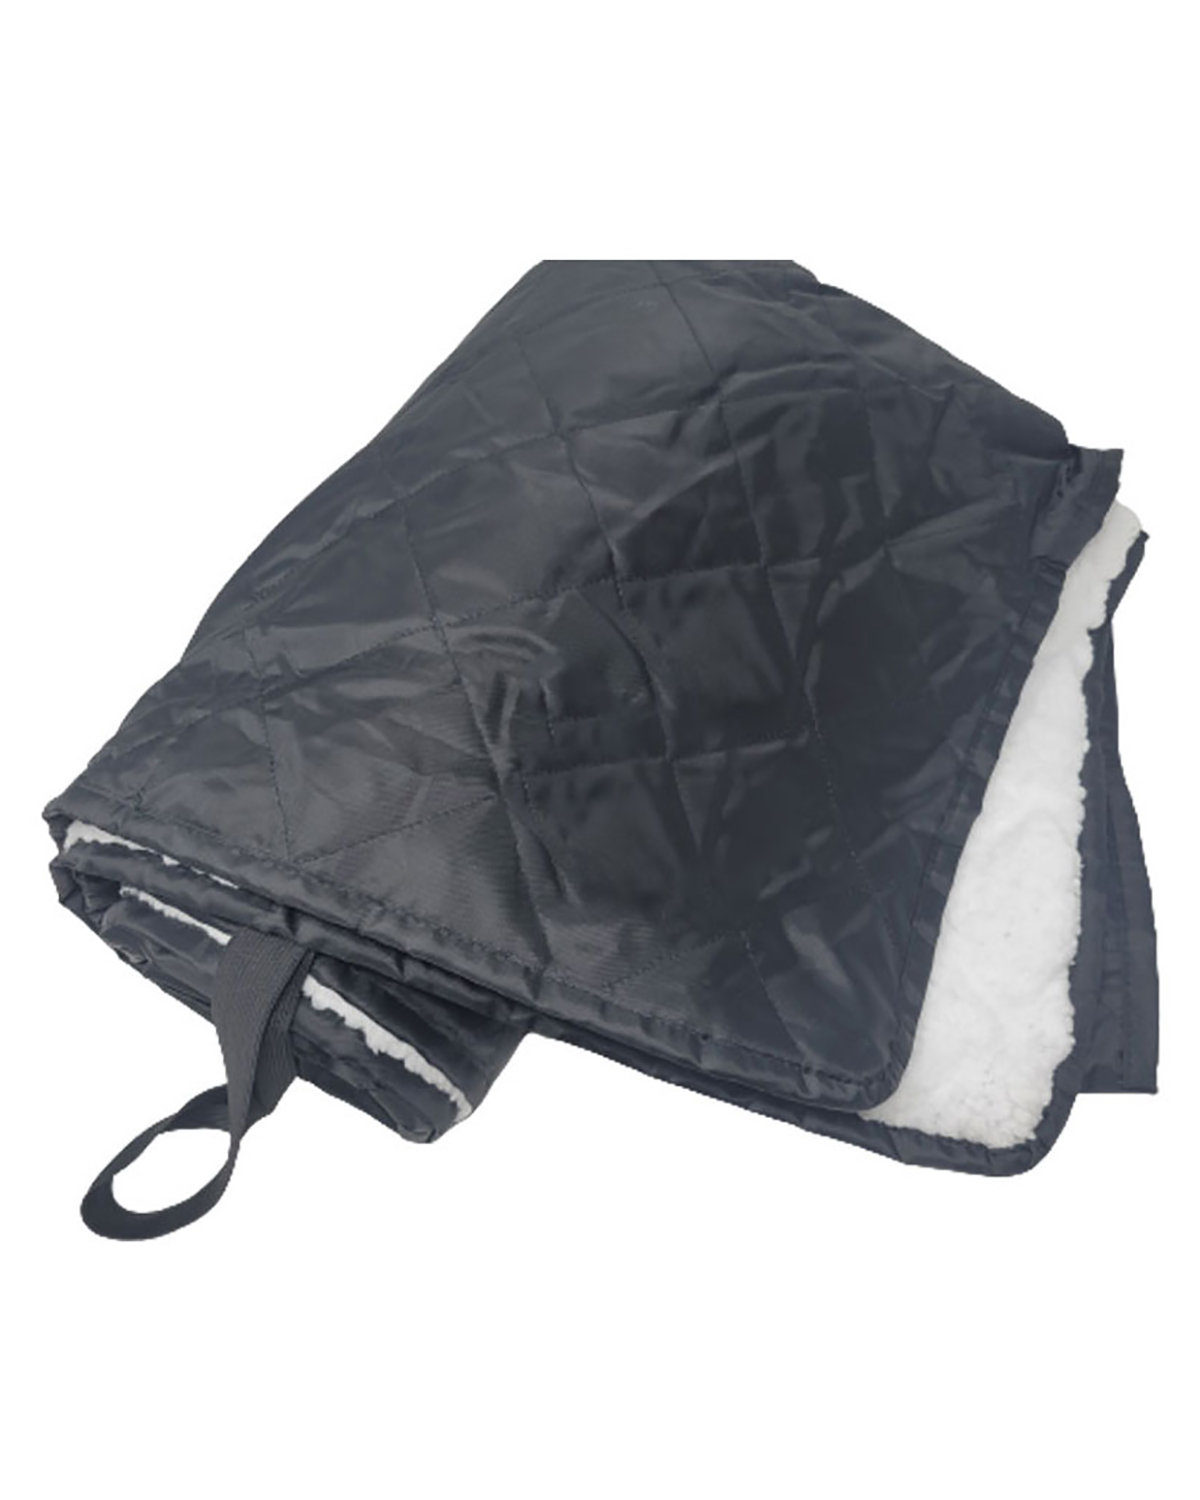 Waterproof Sherpa Blanket-Palmetto Blanket Company